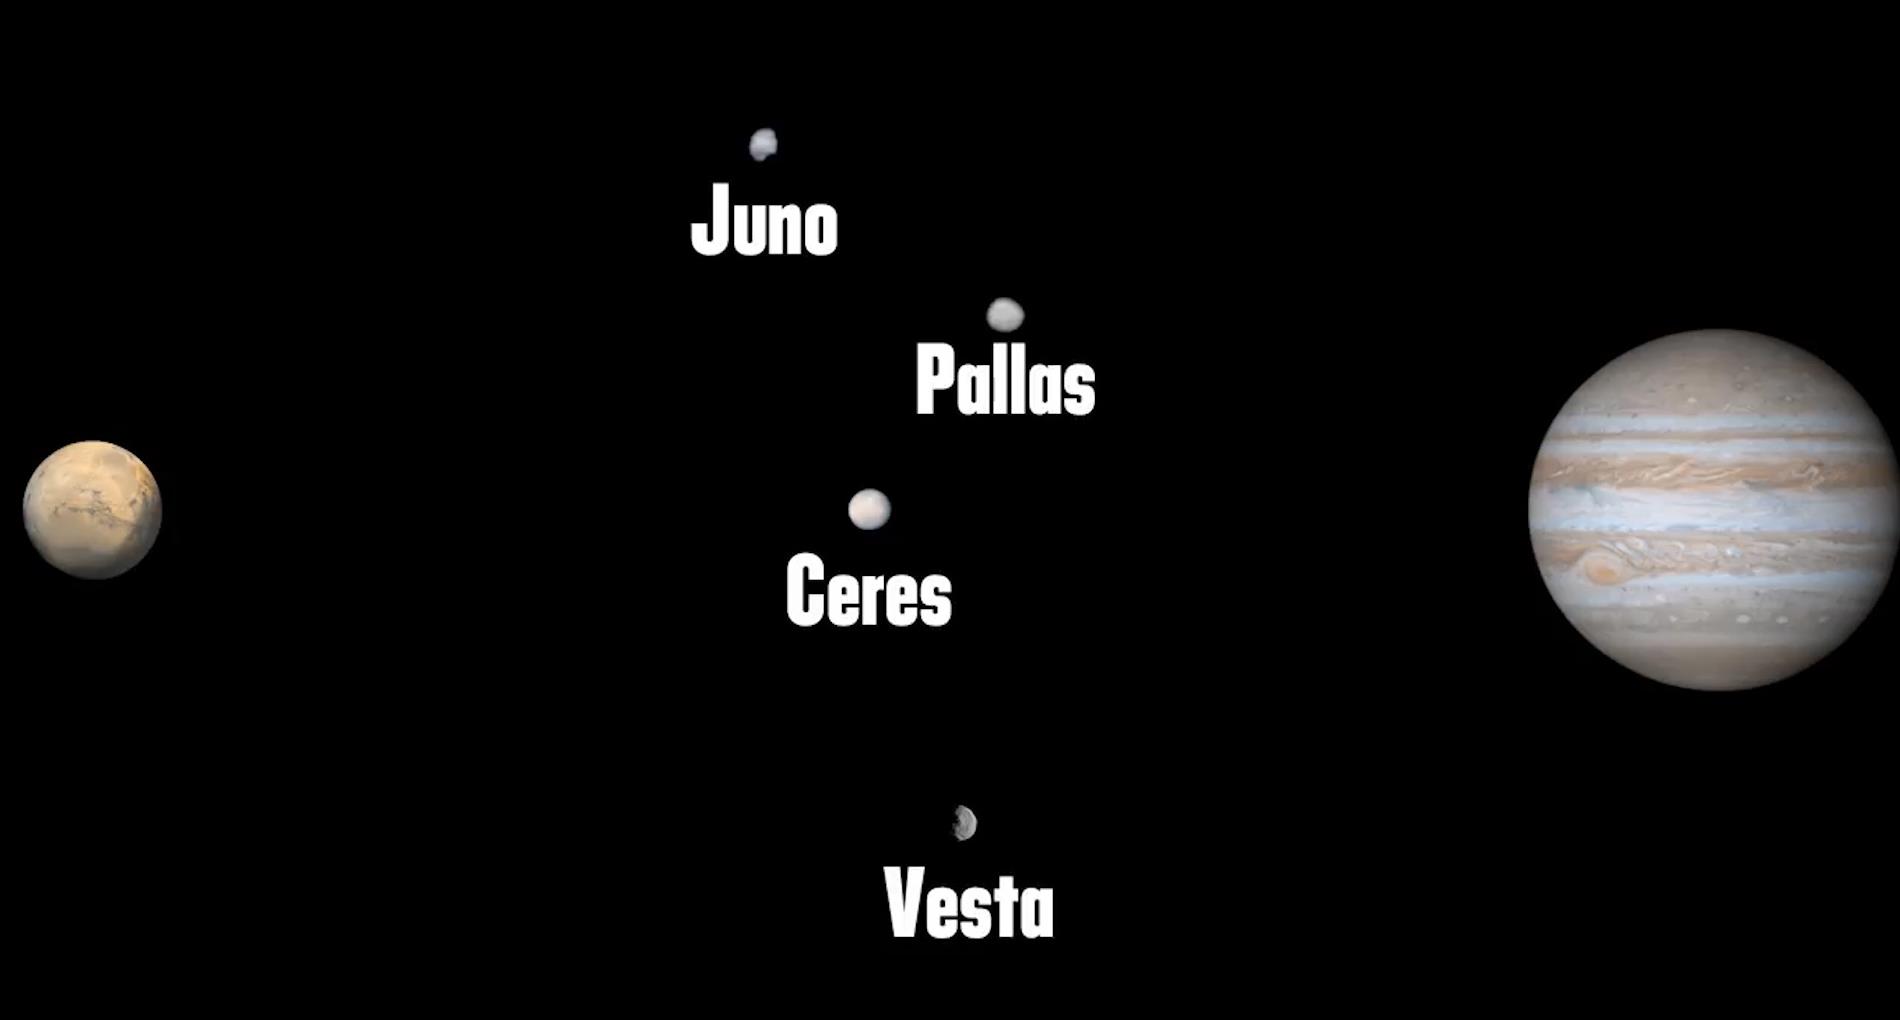 几年后,又发现了第三个,婚神星juno,以及第四个灶神星vesta.